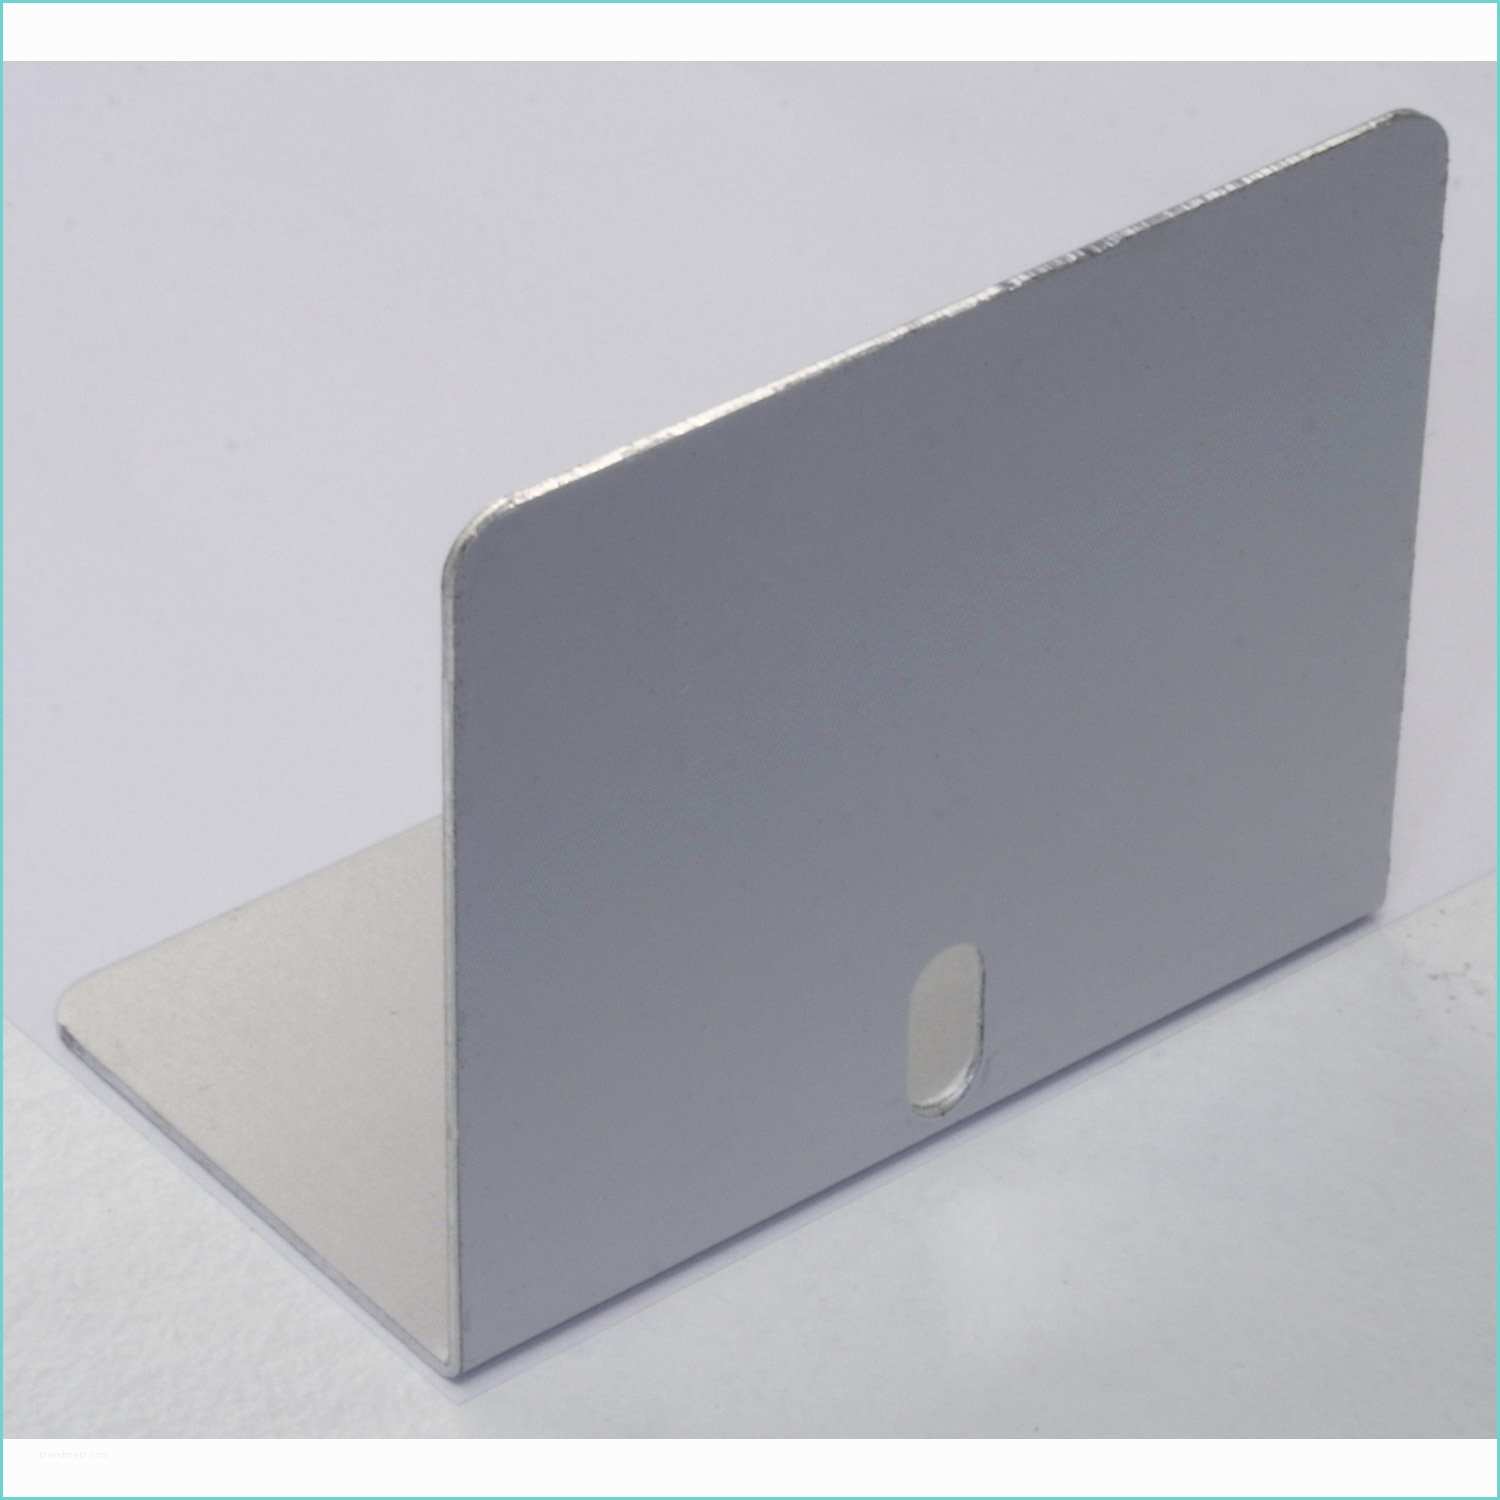 Profil Aluminium Pour Plaque Polycarbonate Leroy Merlin Plaques Polycarbonate Pour Veranda Plaques Polycarbonate